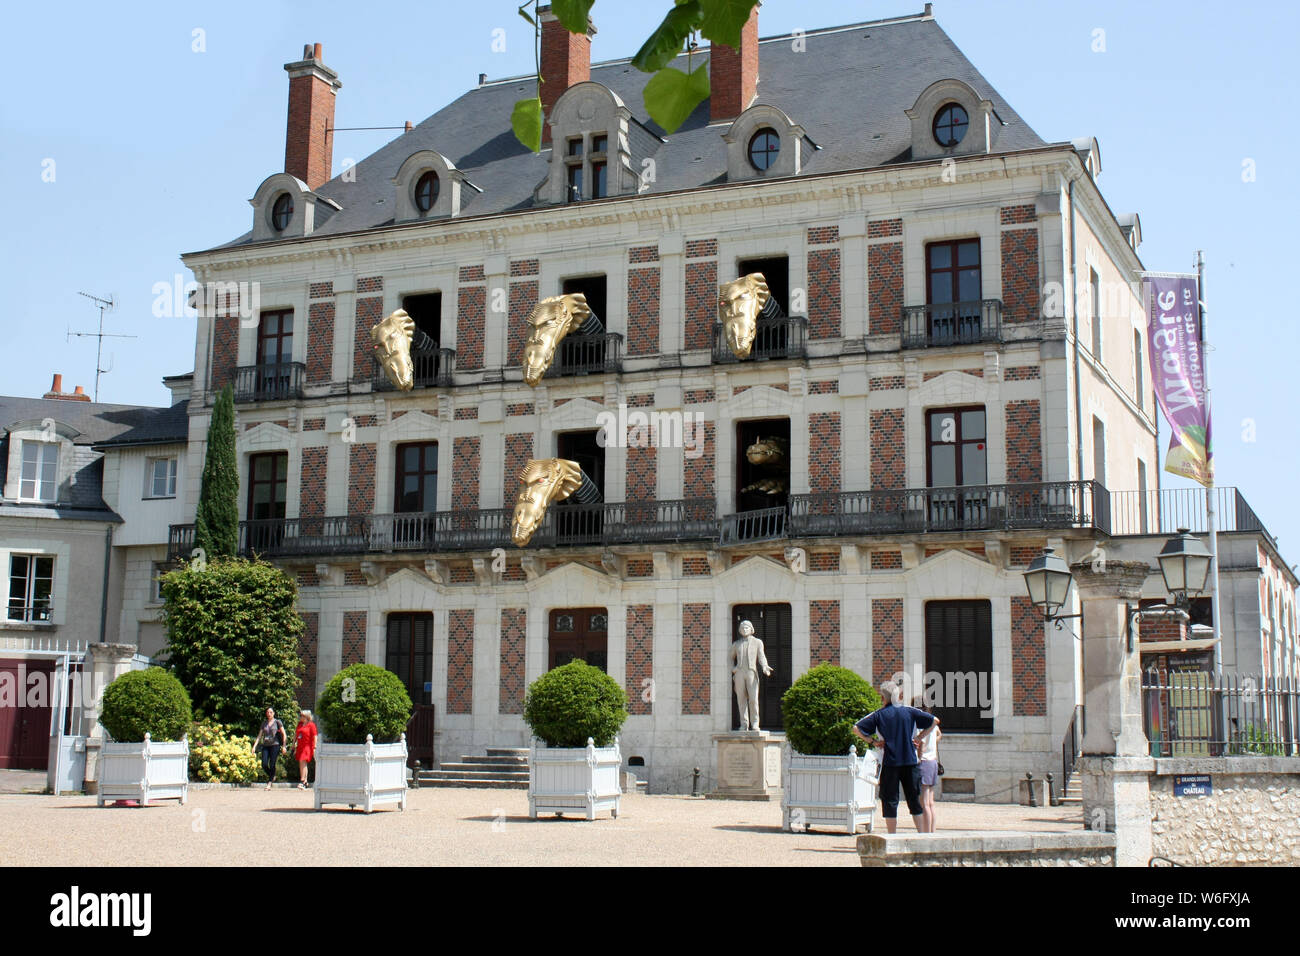 Maison de la Magie Robert-Houdin, Blois, Loir-et-Cher, France Banque D'Images